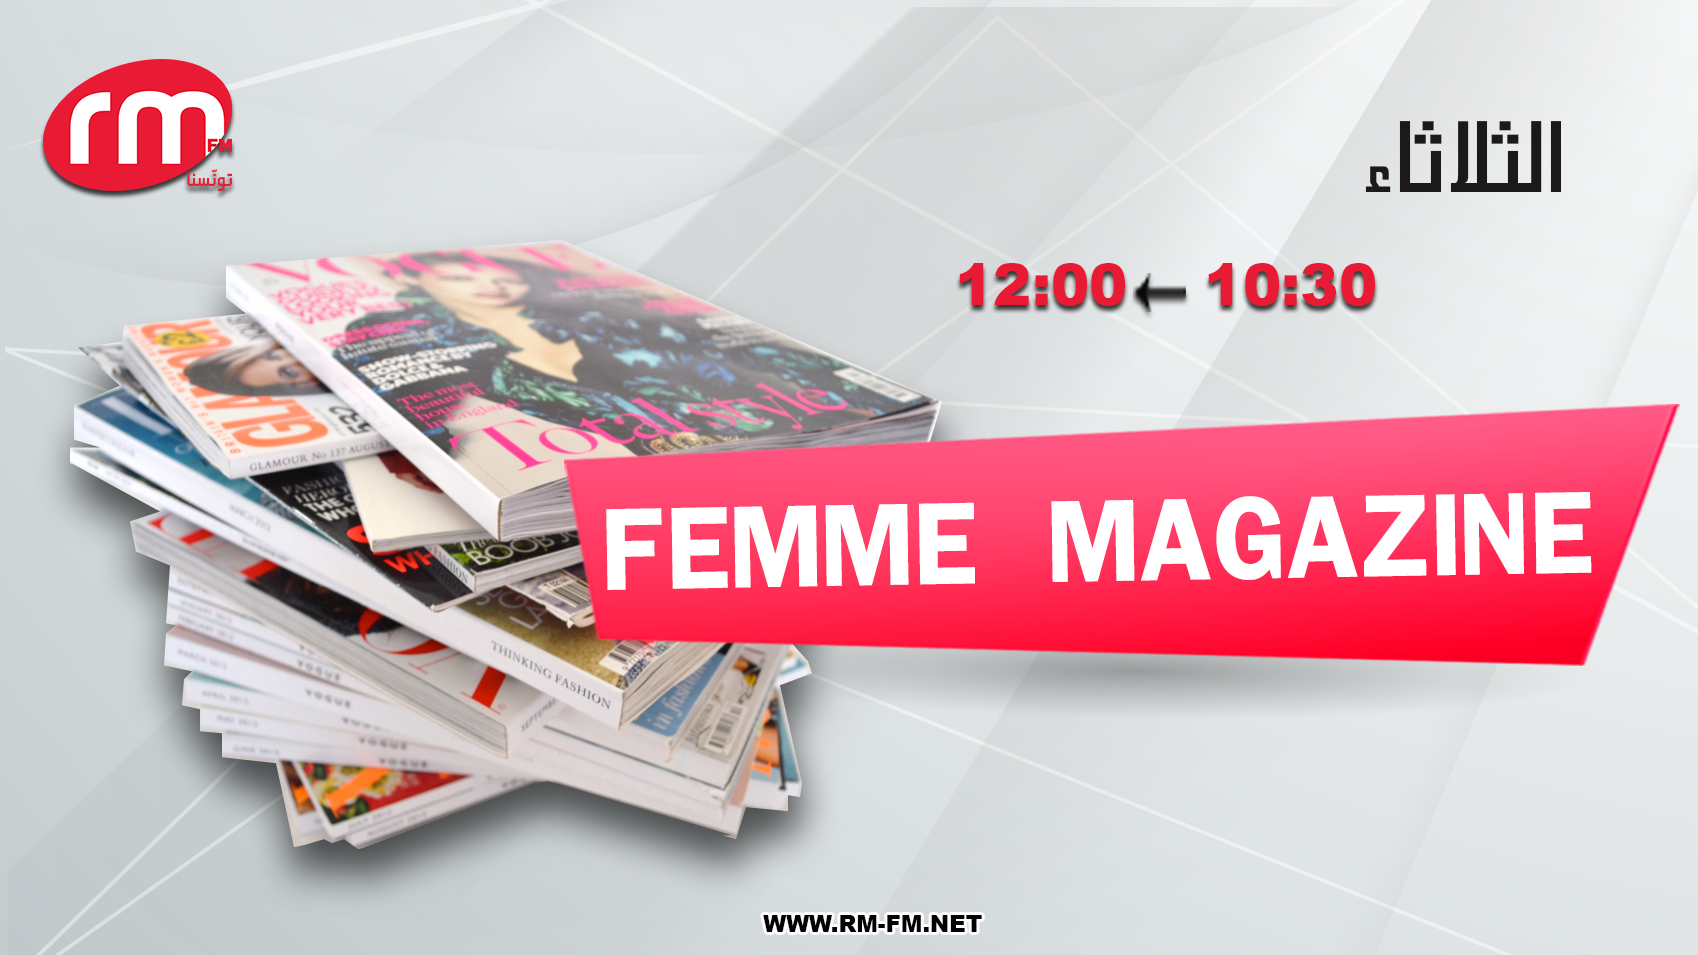 femme-magazine